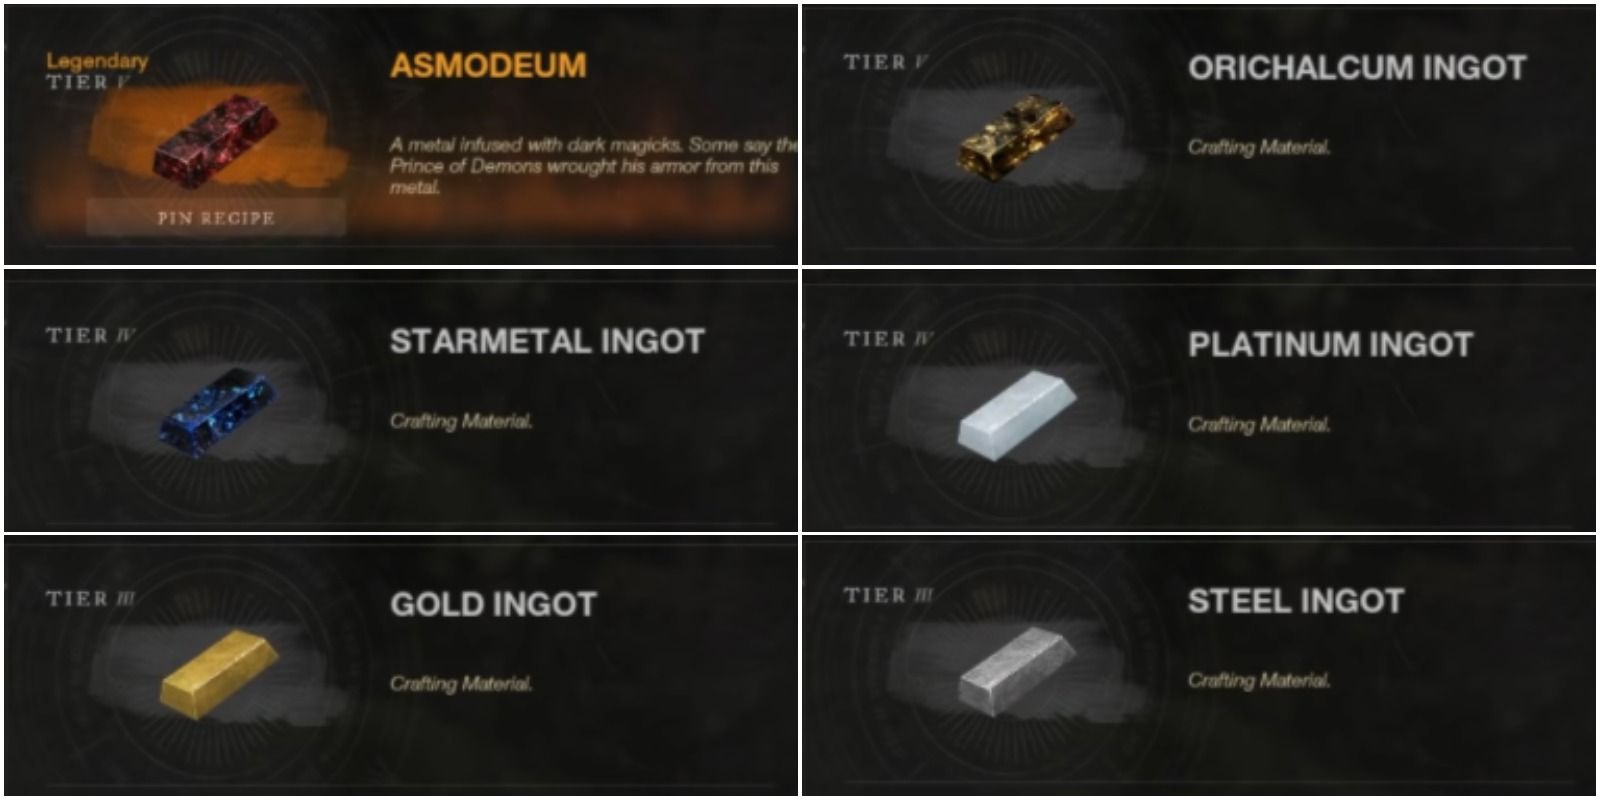 new world rarest metals asmodeum orichalcum ingot platinum ingot starmetal ingot gold ingot and steel ingot in menu